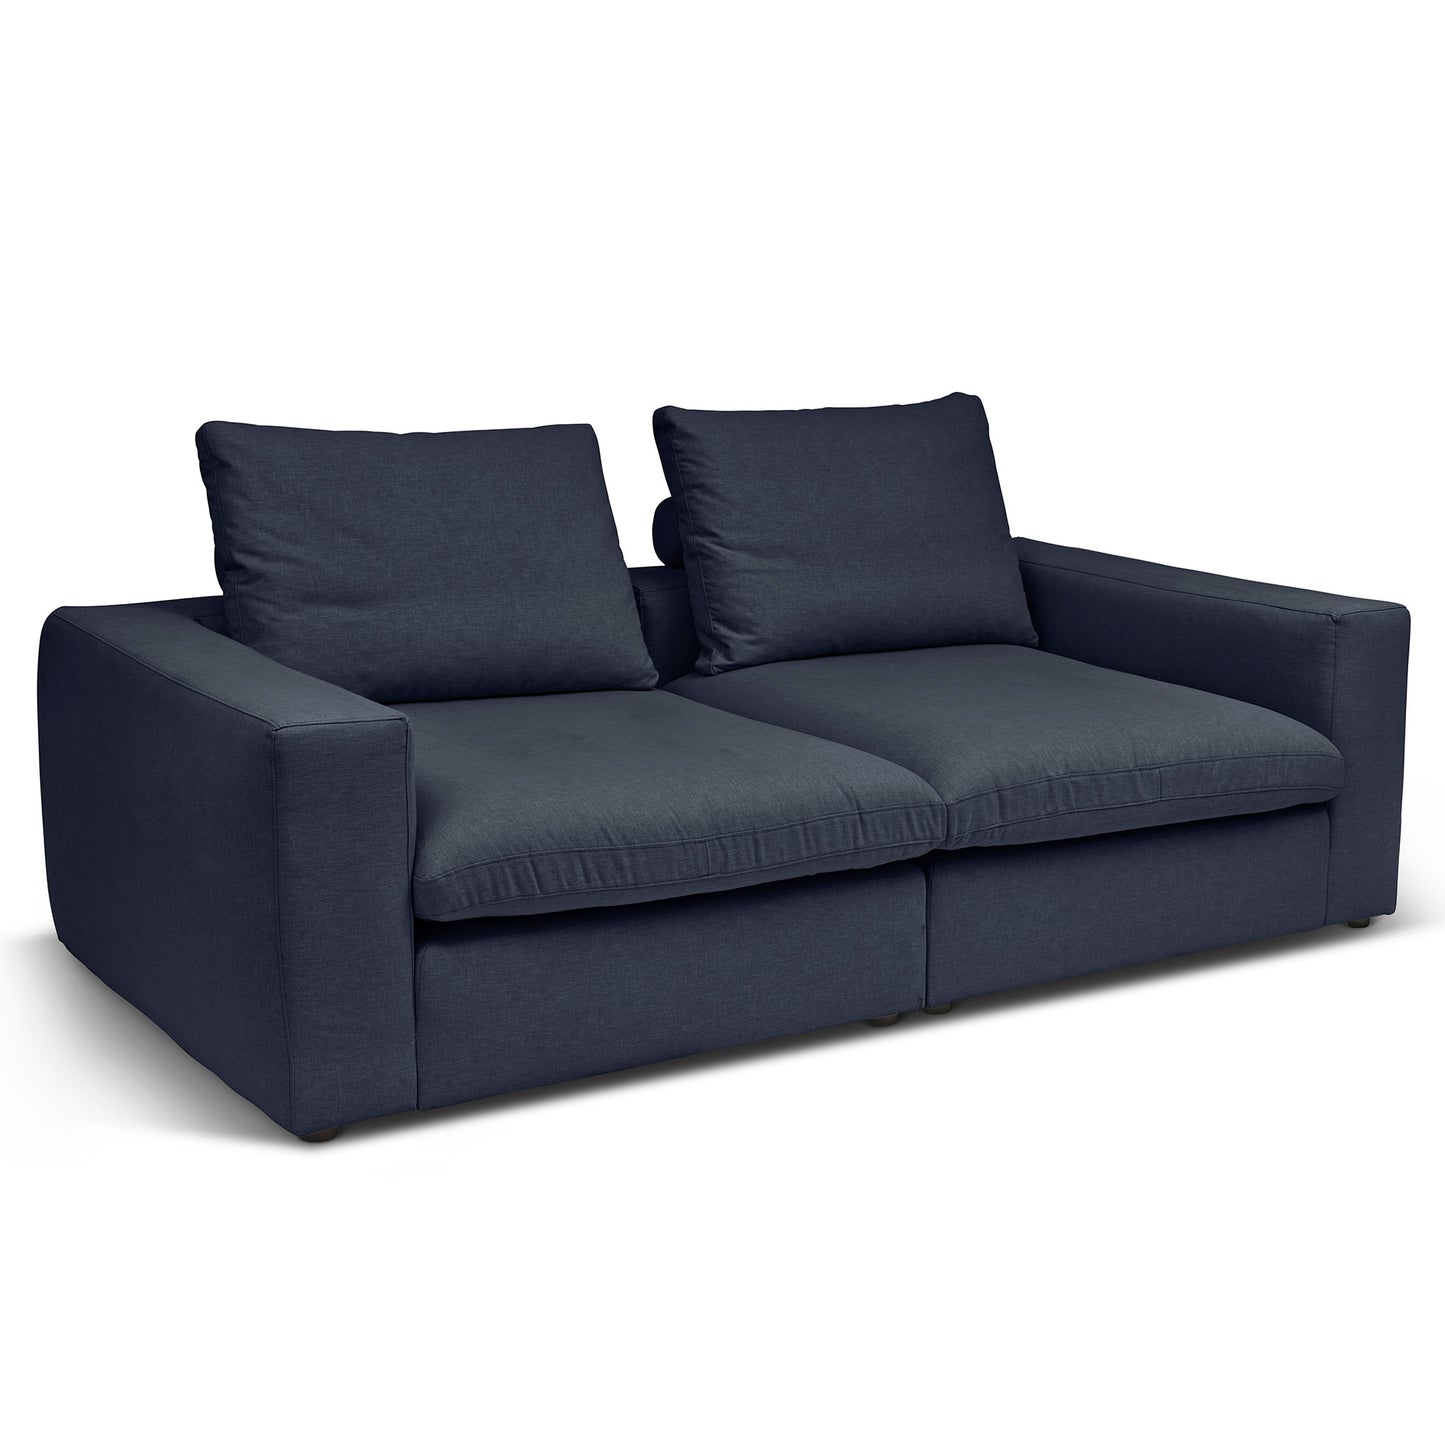 Extra djup 3-sits soffa i mörk blå färg. Palazzo är en byggbar modulsoffa